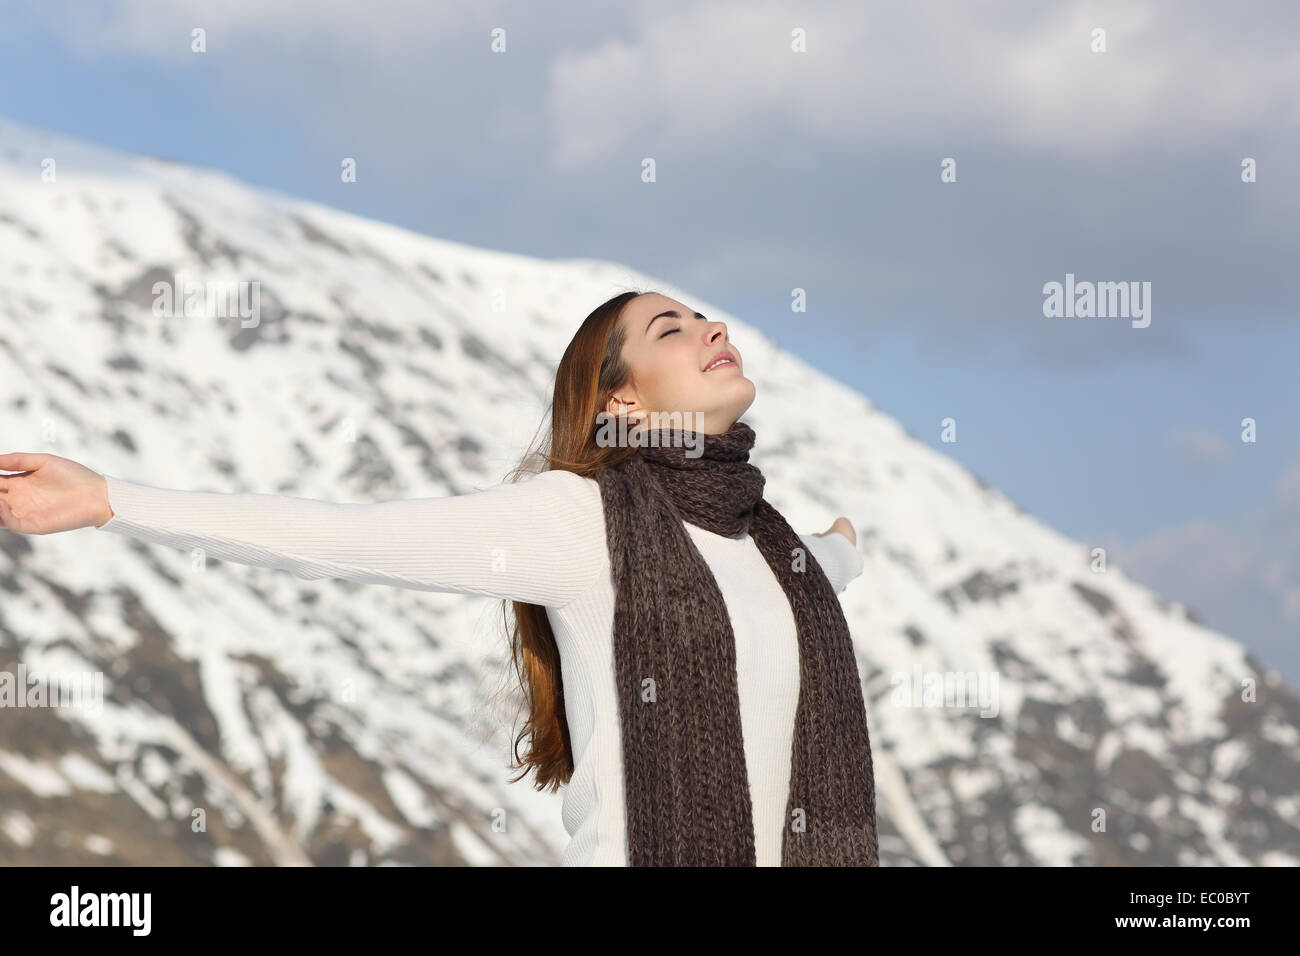 Femme de respirer l'air frais raising arms en hiver avec la montagne enneigée en arrière-plan Banque D'Images